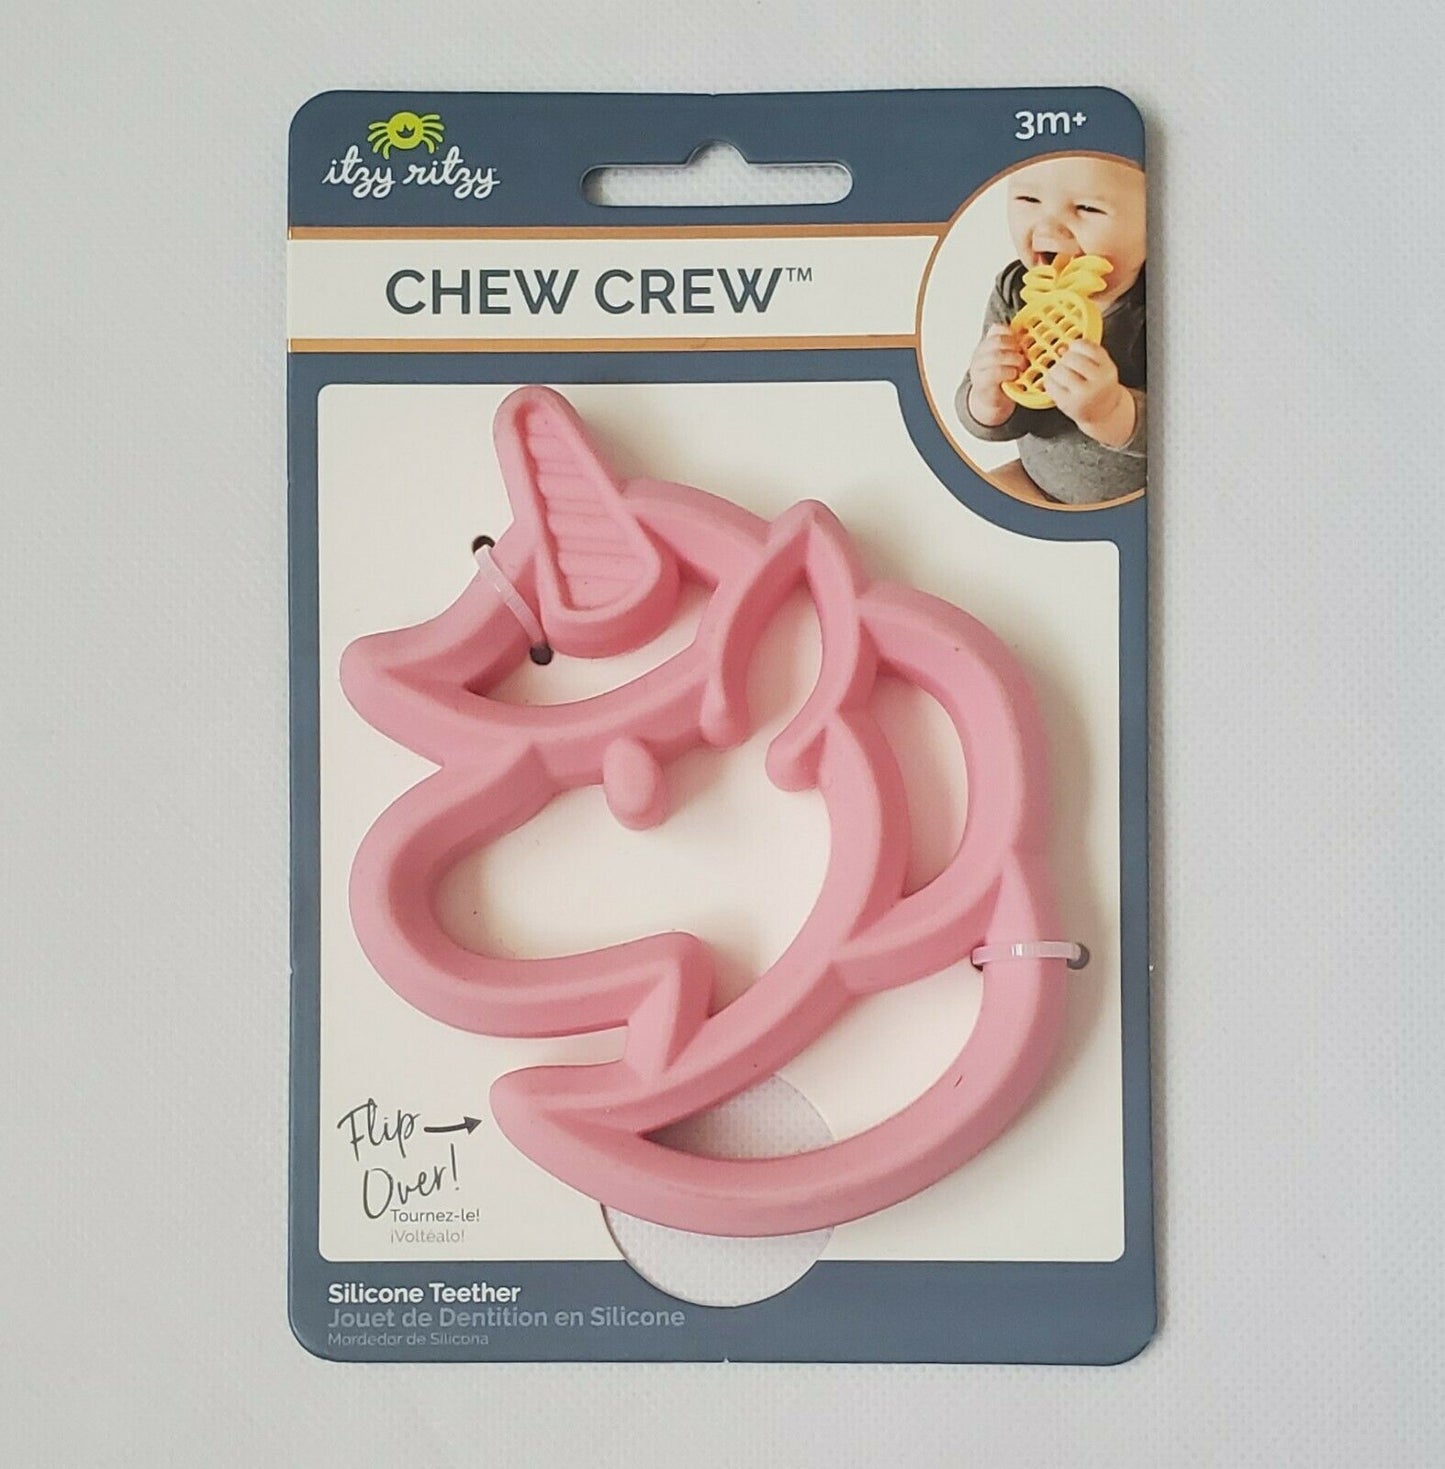 Chew Crew